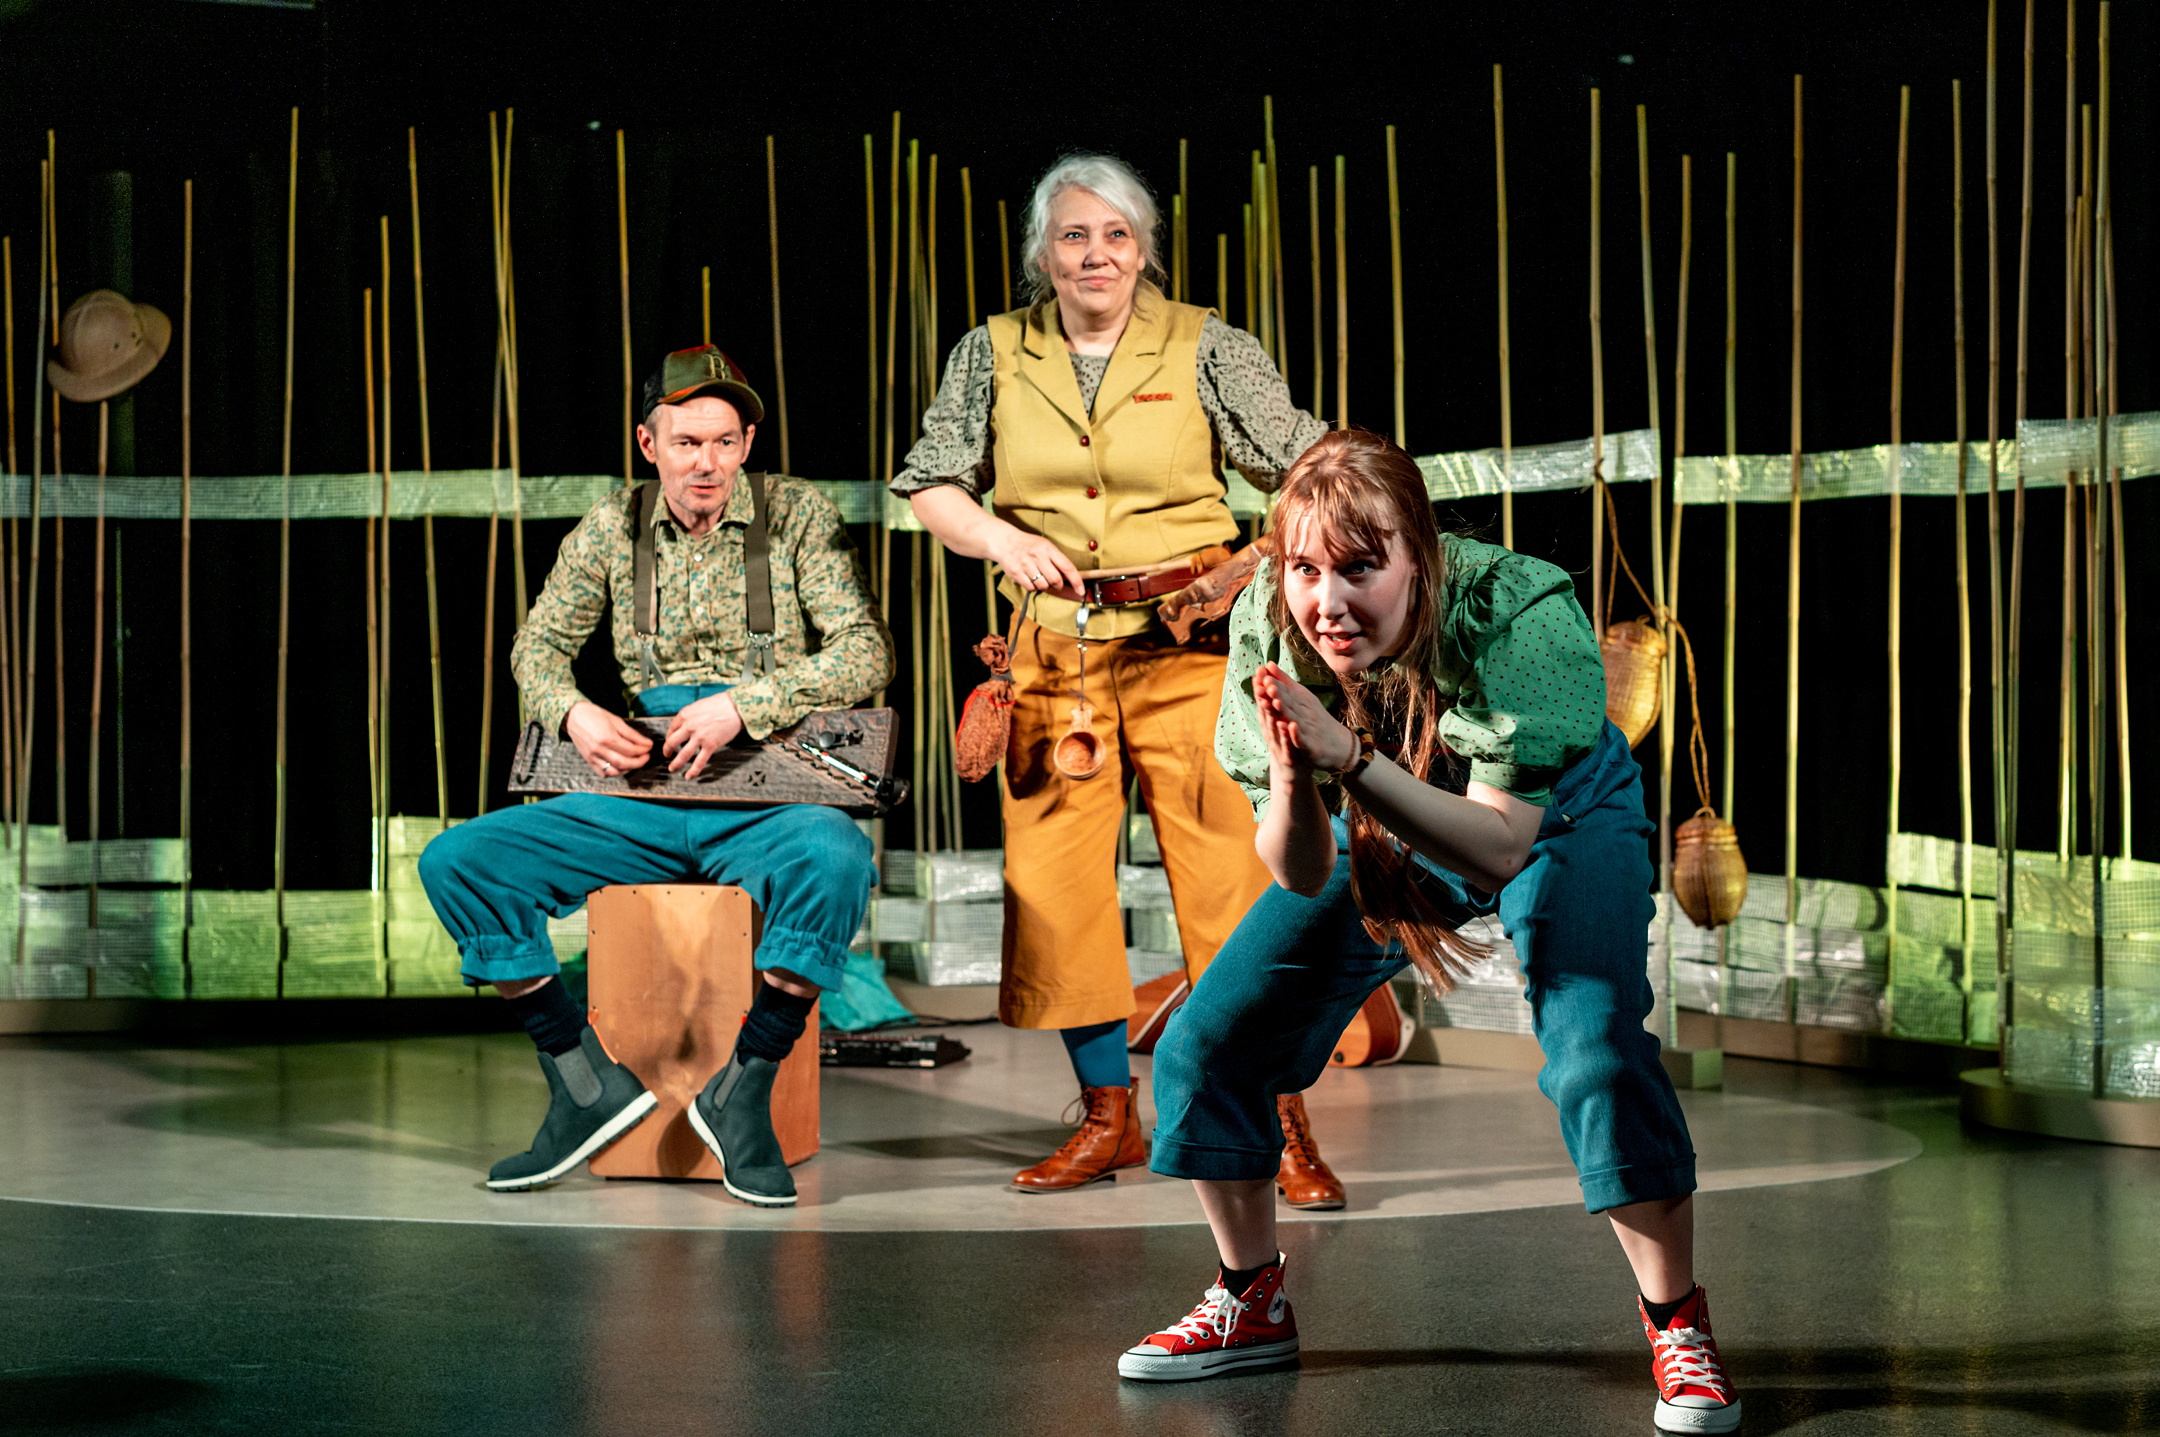 Fotografi: Bildet viser tre skuespillere på en scene, to kvinner og en mann. Skuespillerne er kledd i gult, grønt og blått. I bakgrunnen kan skimtes scenografi.